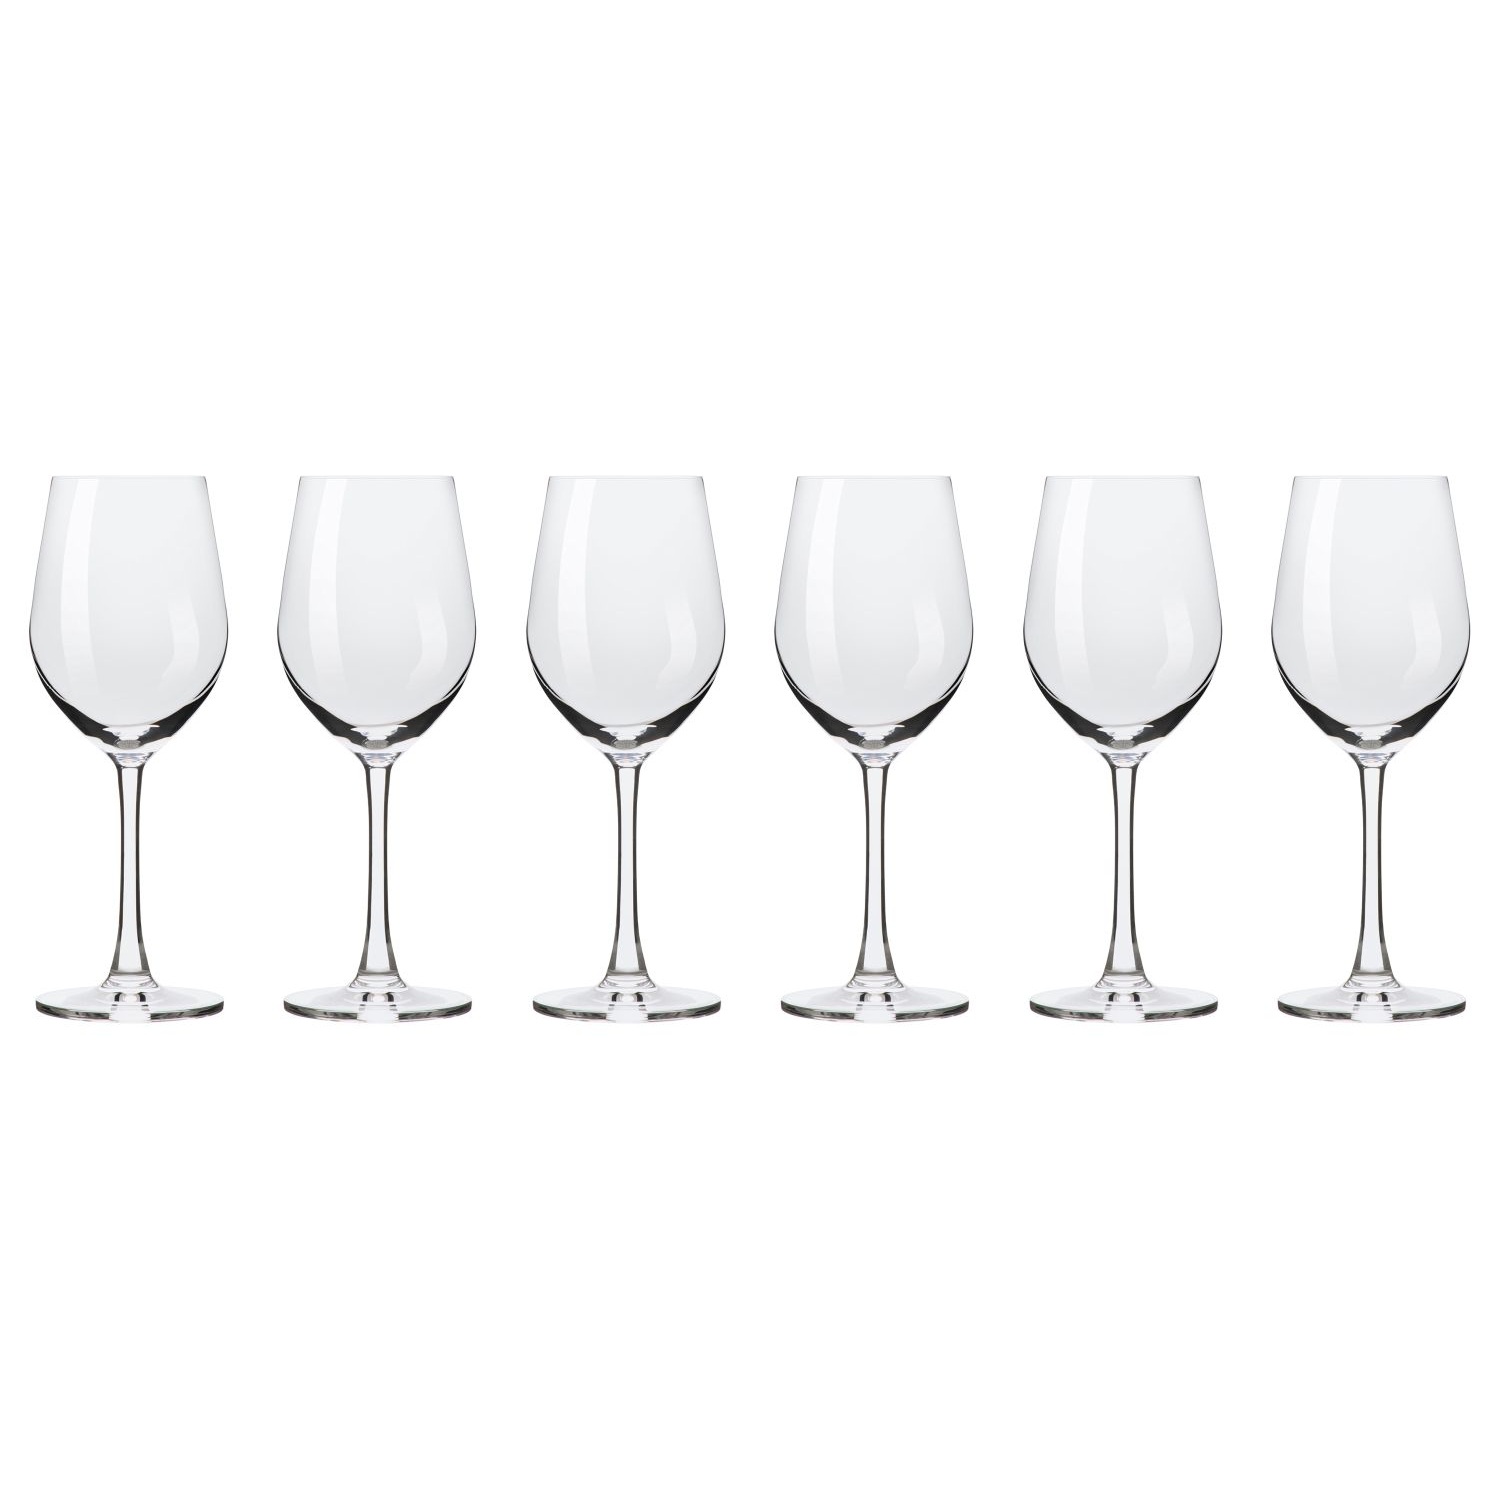 Набор бокалов Maxwell & Williams Cosmopolitan для вина 0,345 л adriana бокалы для белого вина 6 шт